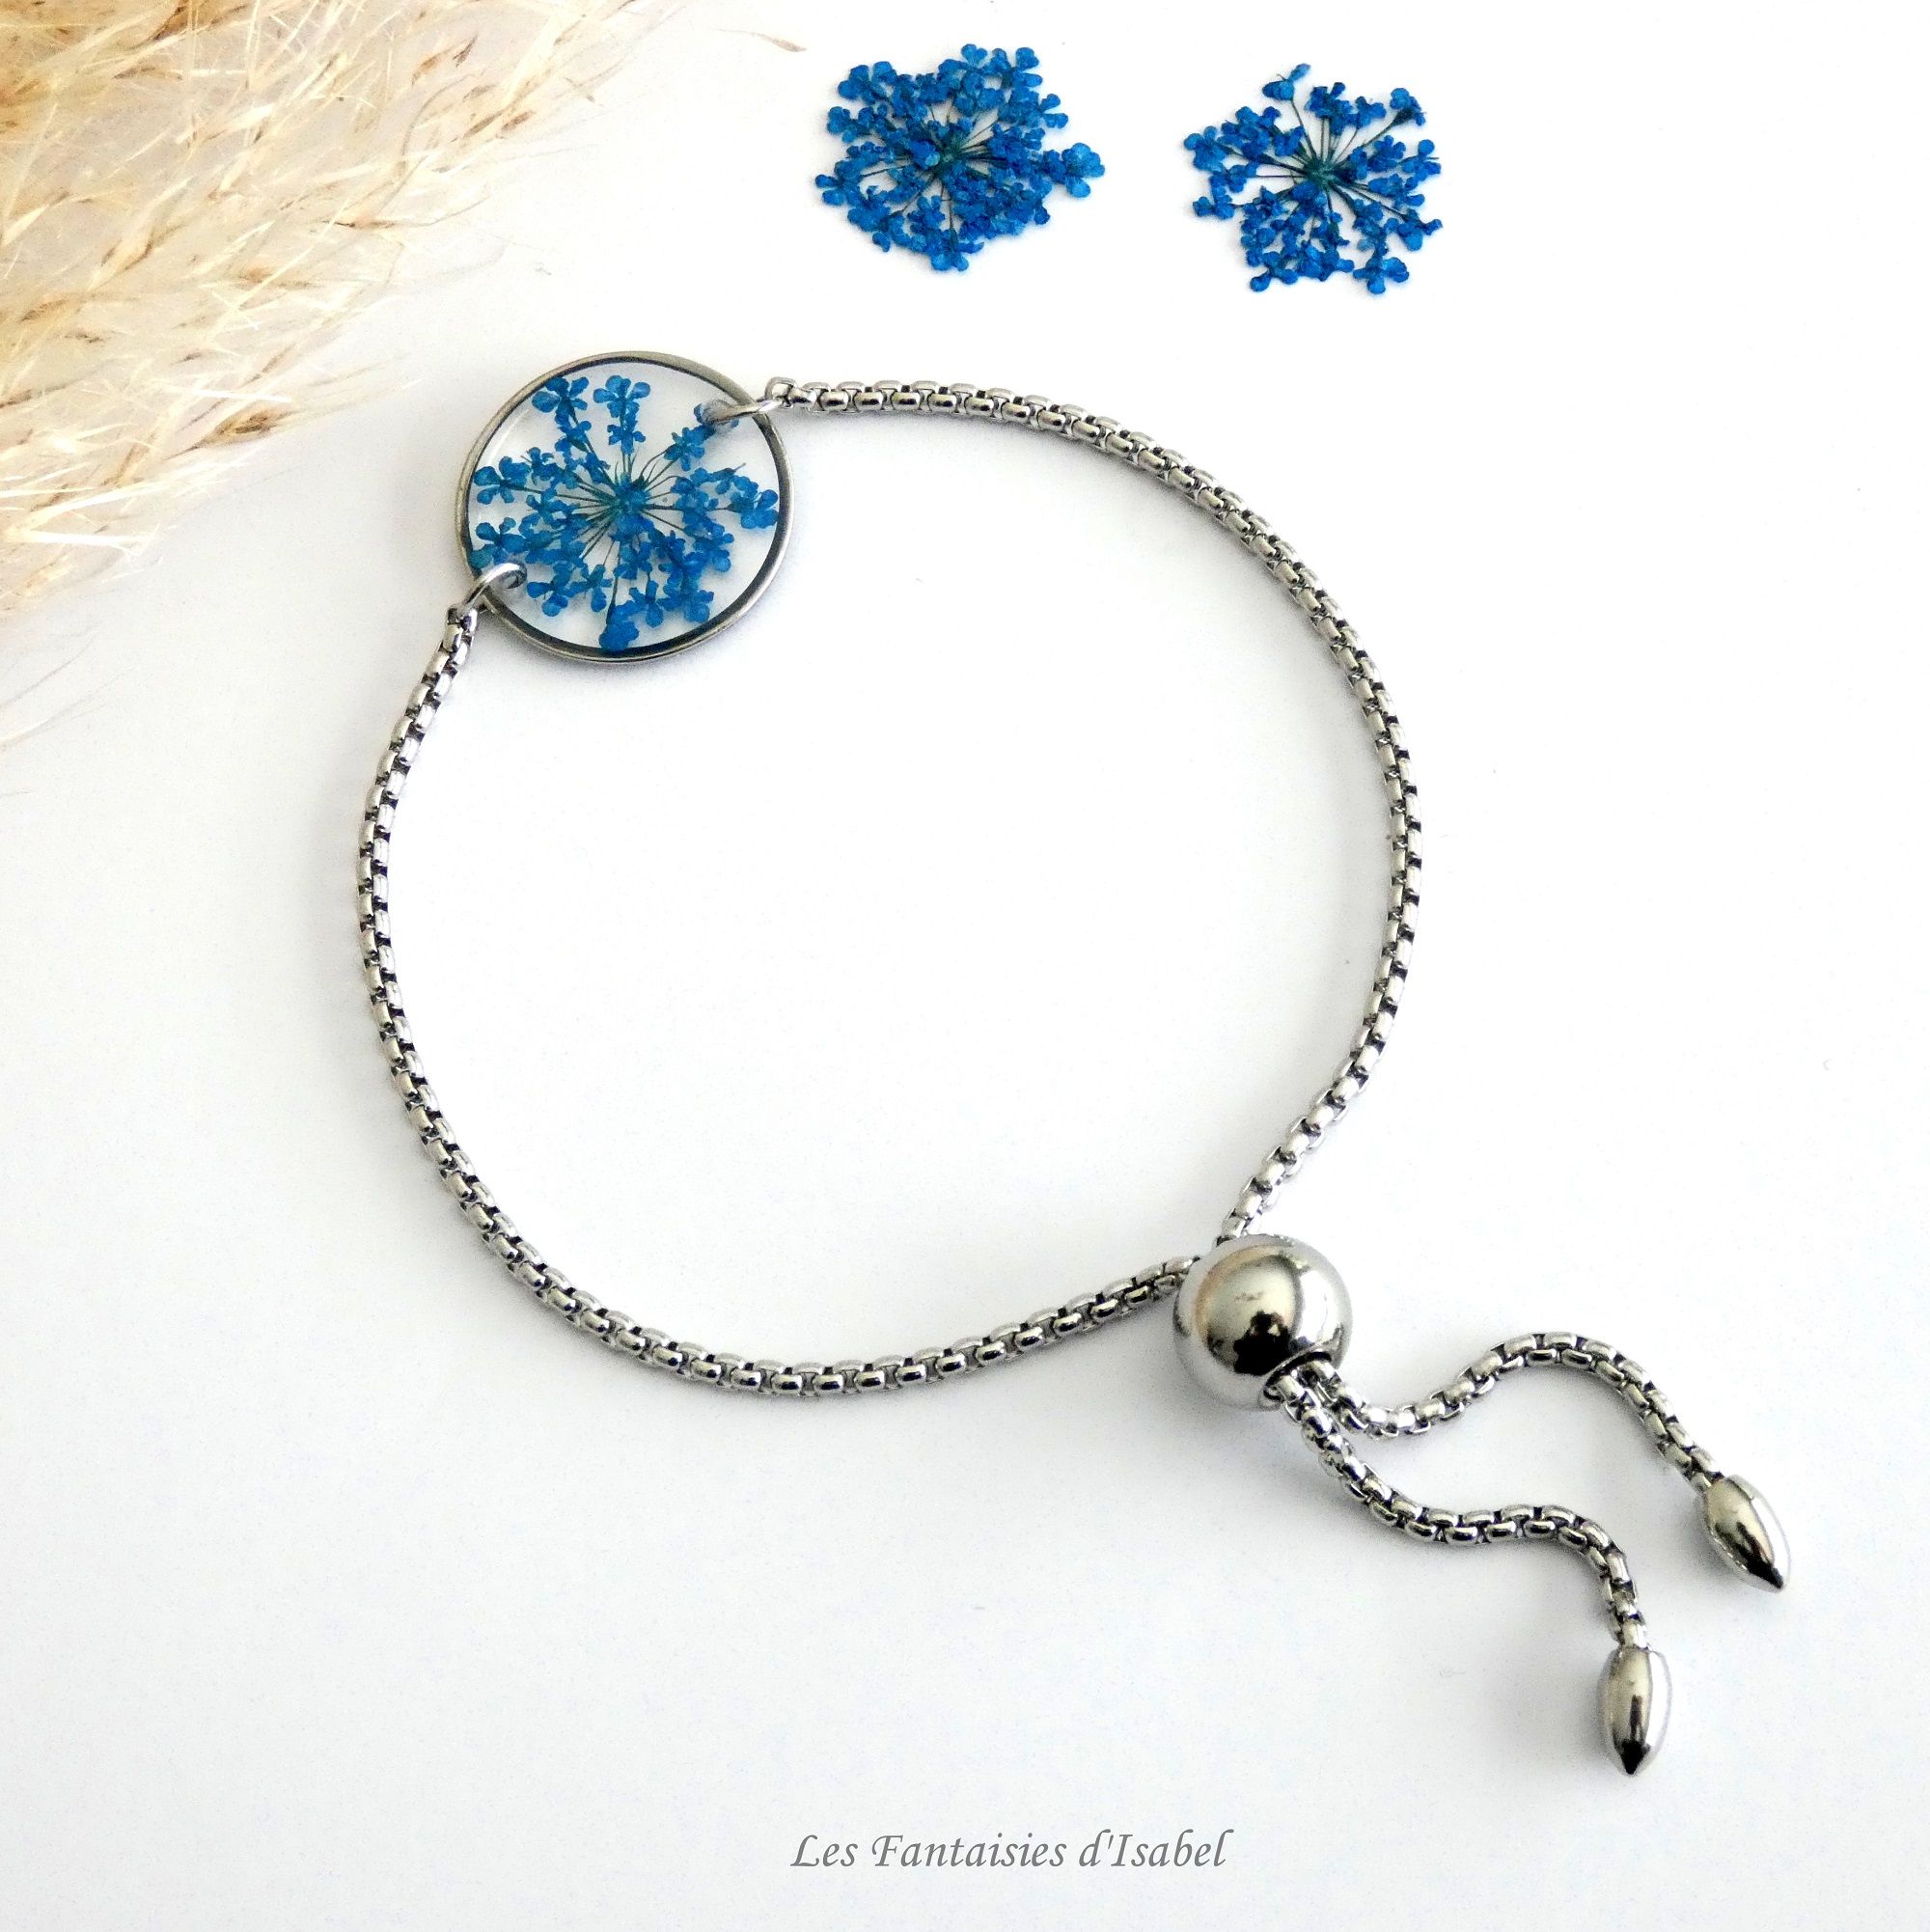 45-bracelet ajustable acier inox cercle fleur dentelle reine bleu roi artisanal landes